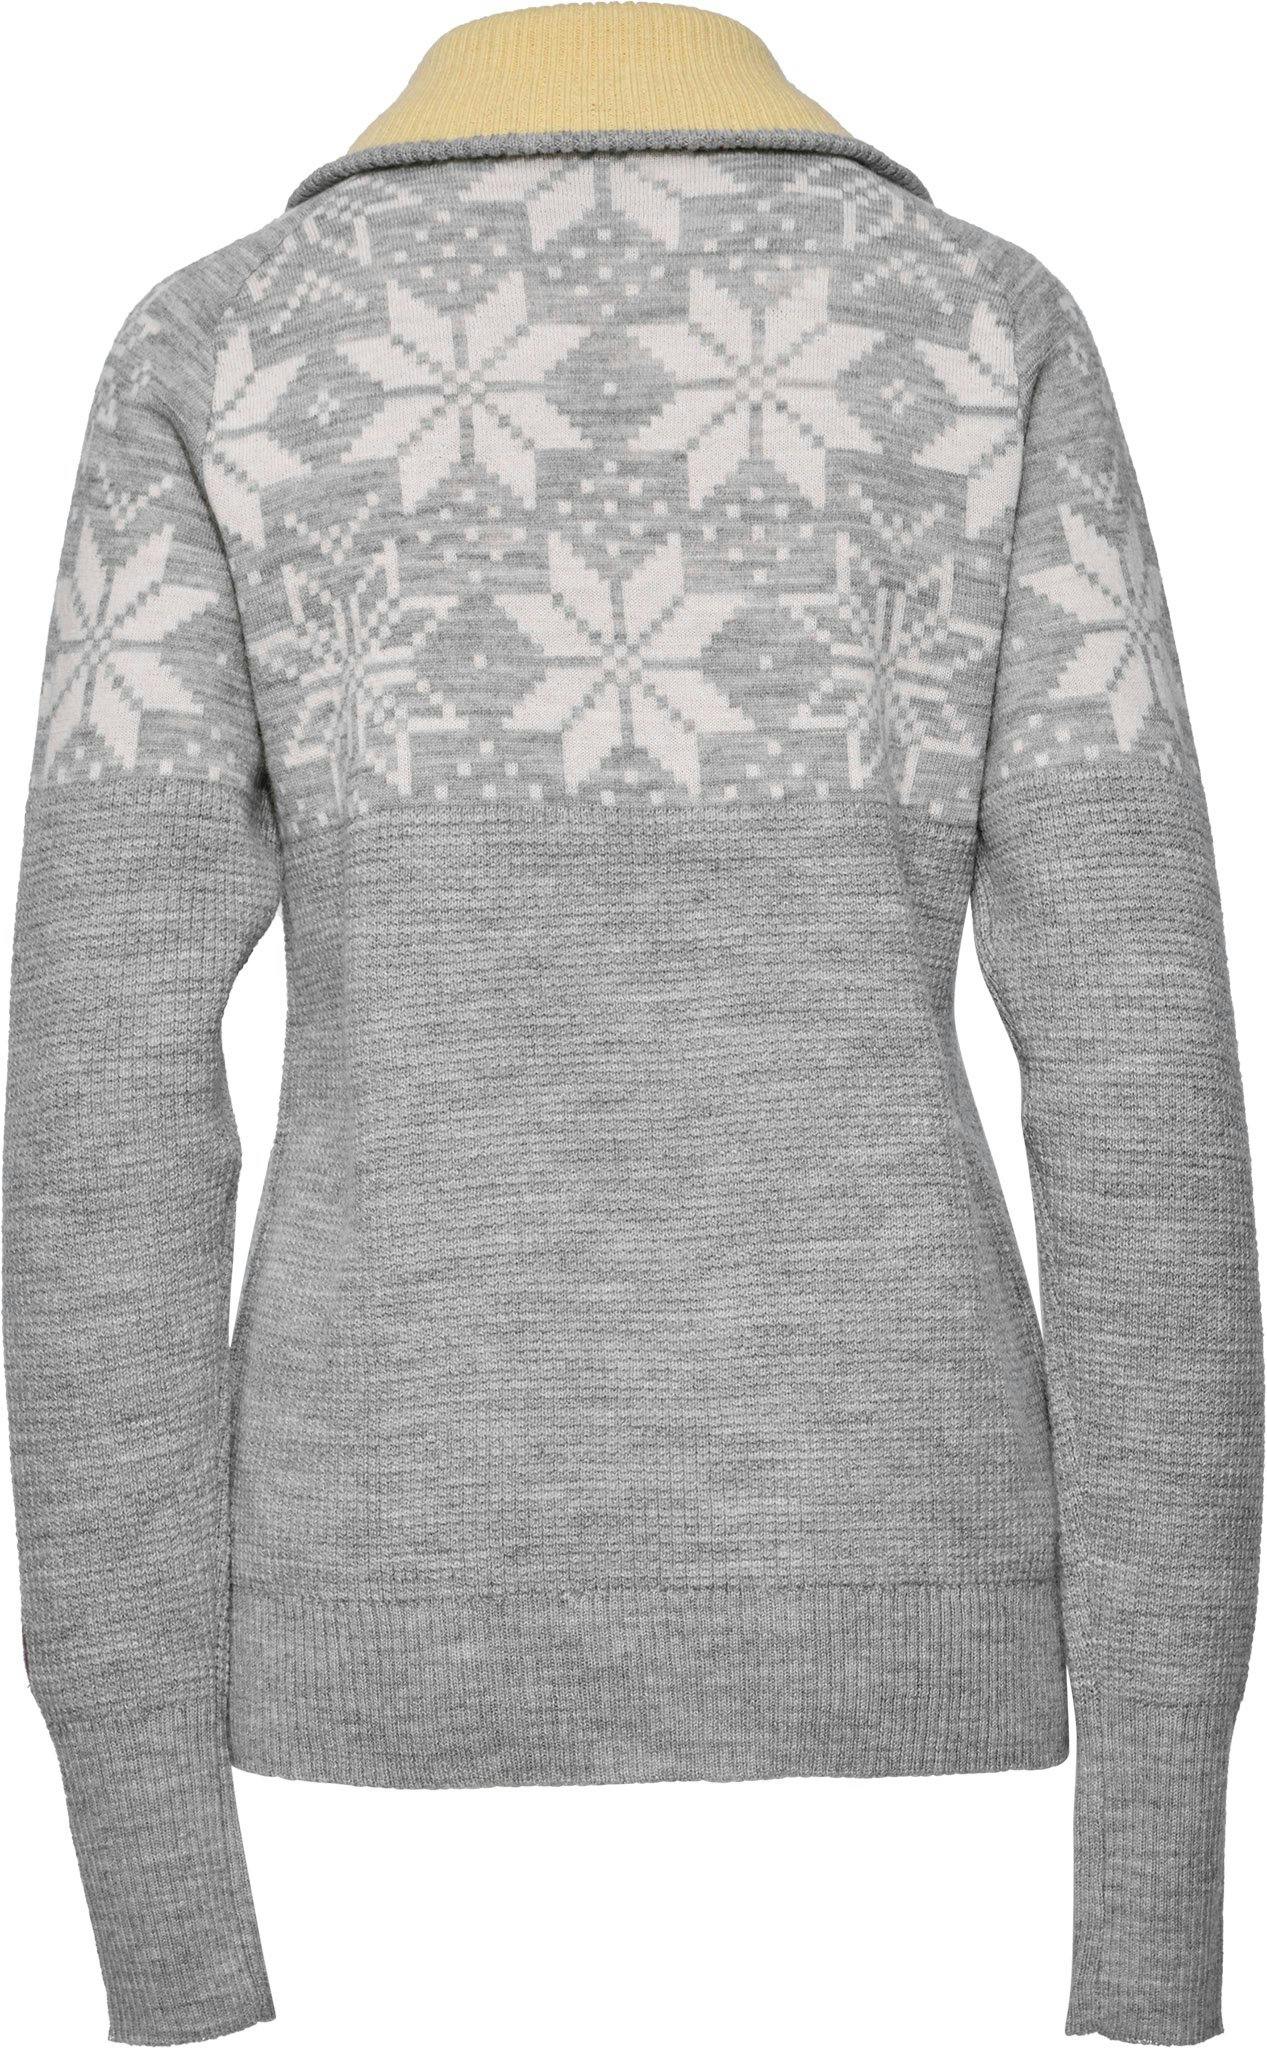 Product image for Rav Kiby Sweater - Women's